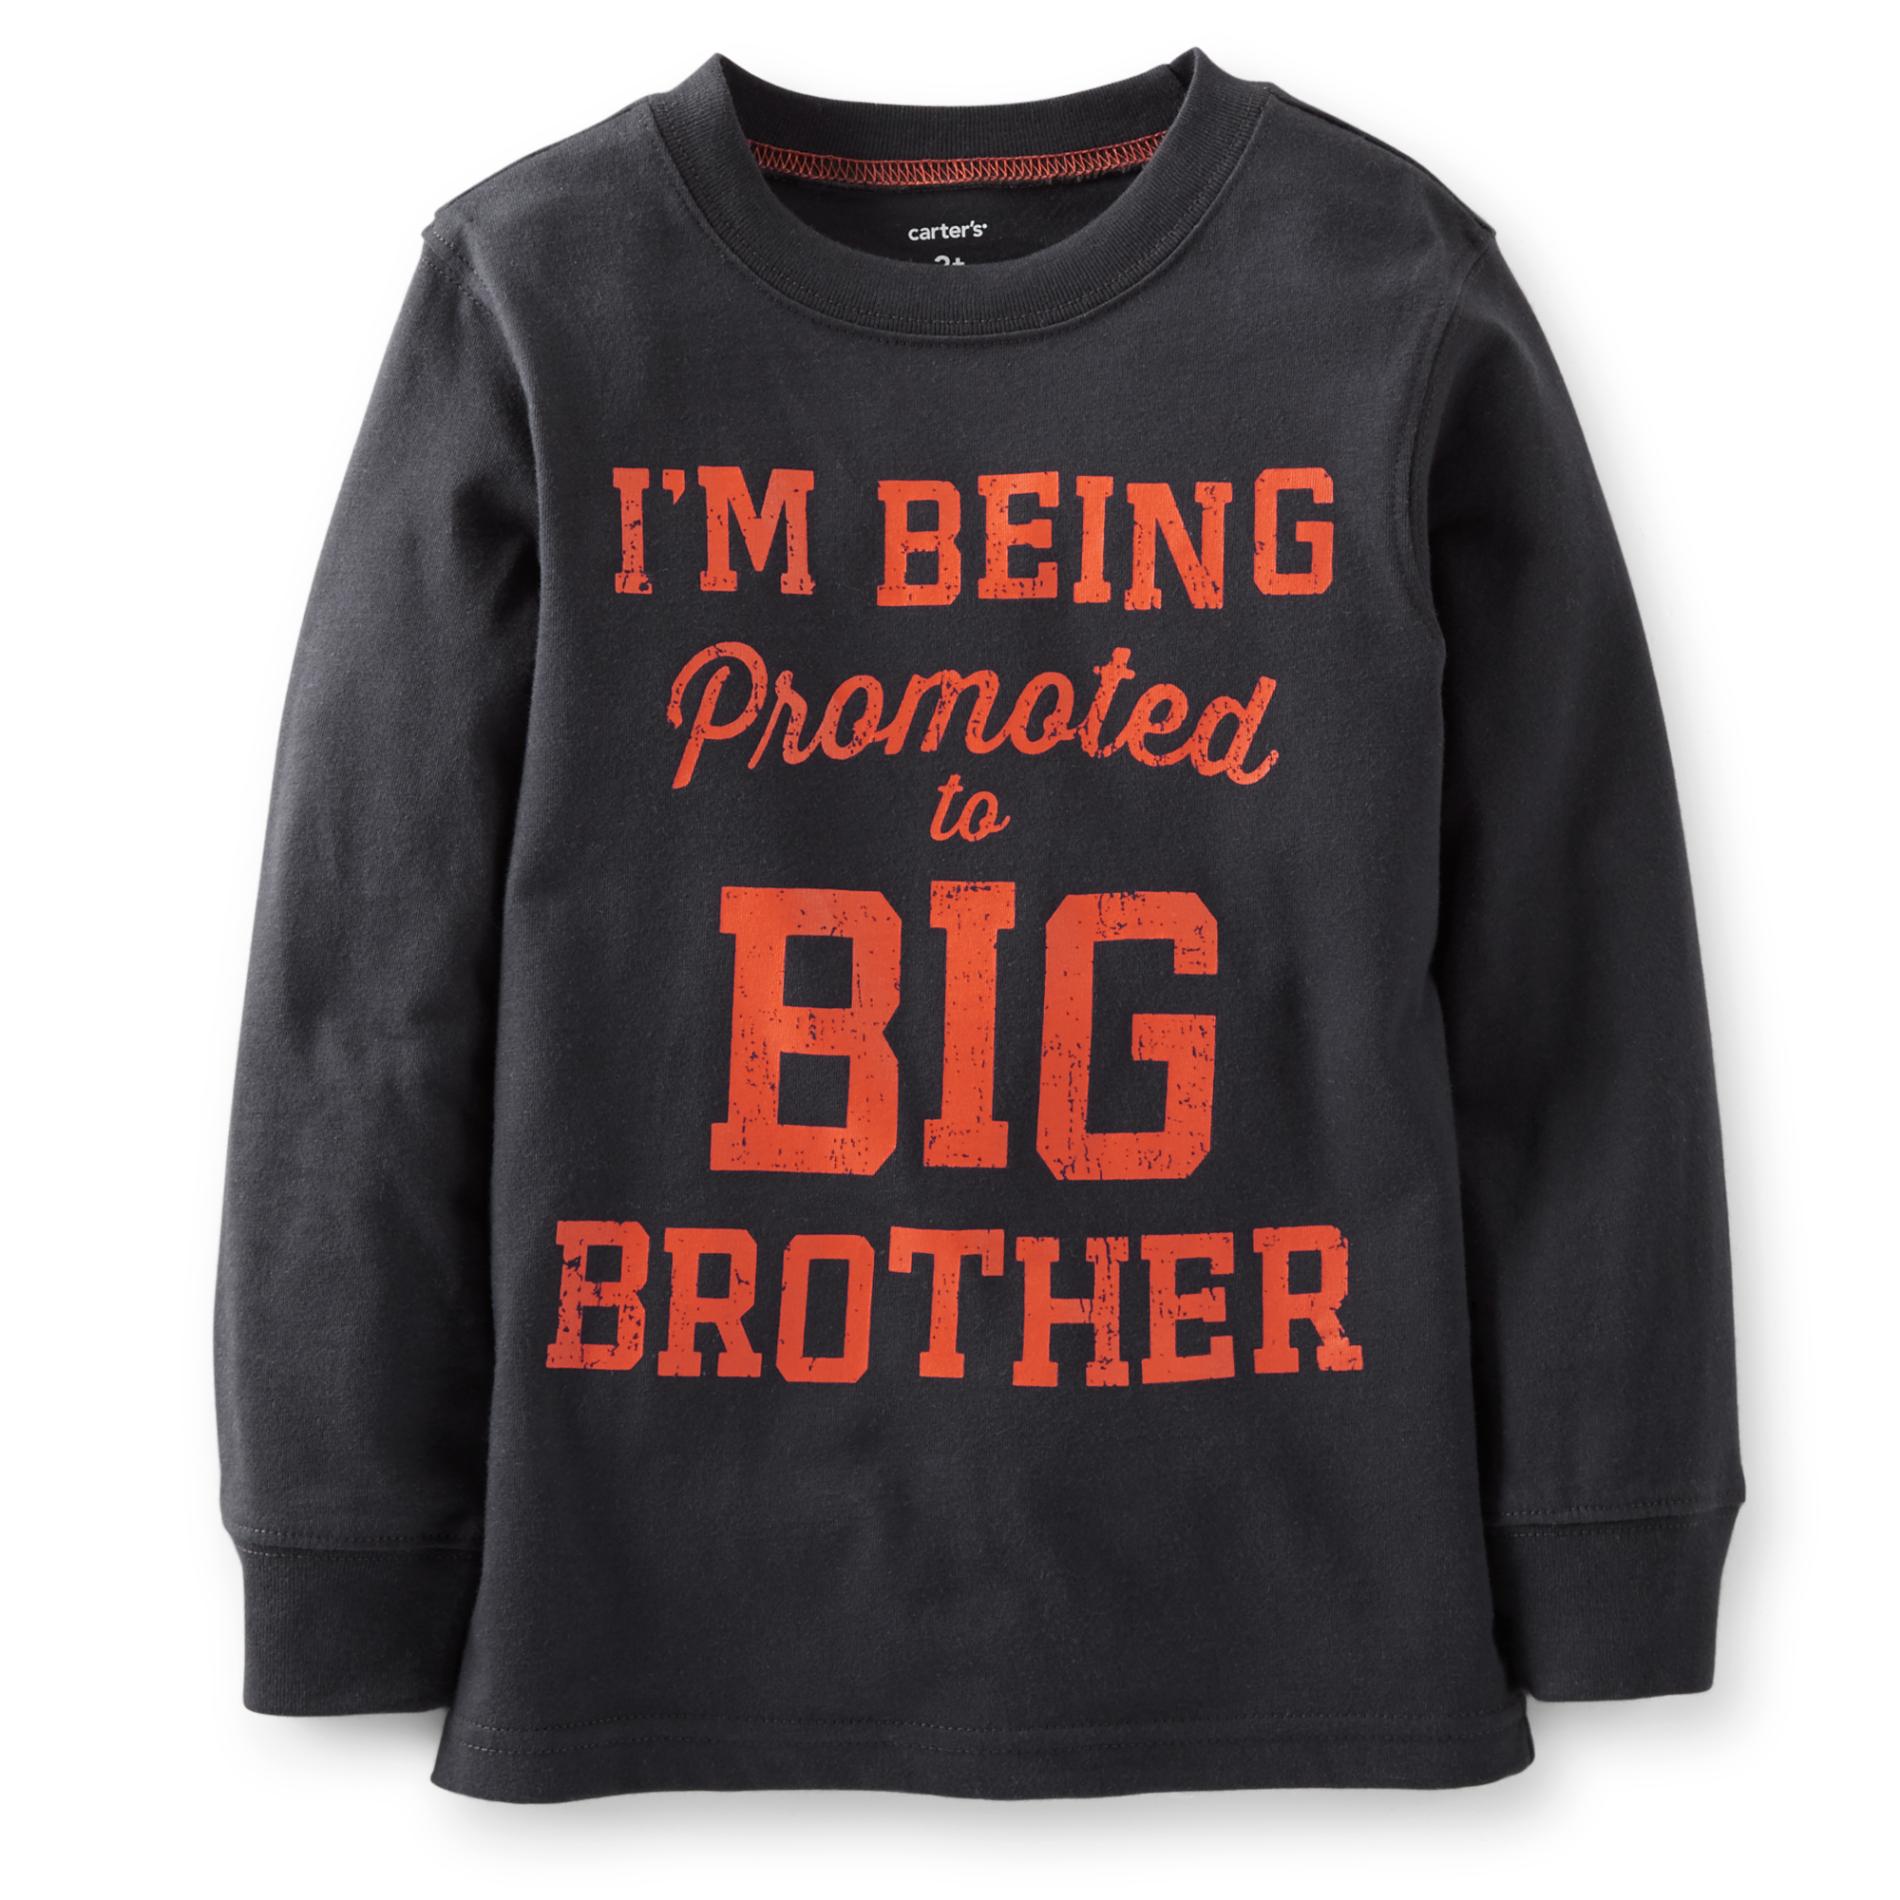 Carter's Boy's Graphic Sweatshirt - Big Brother